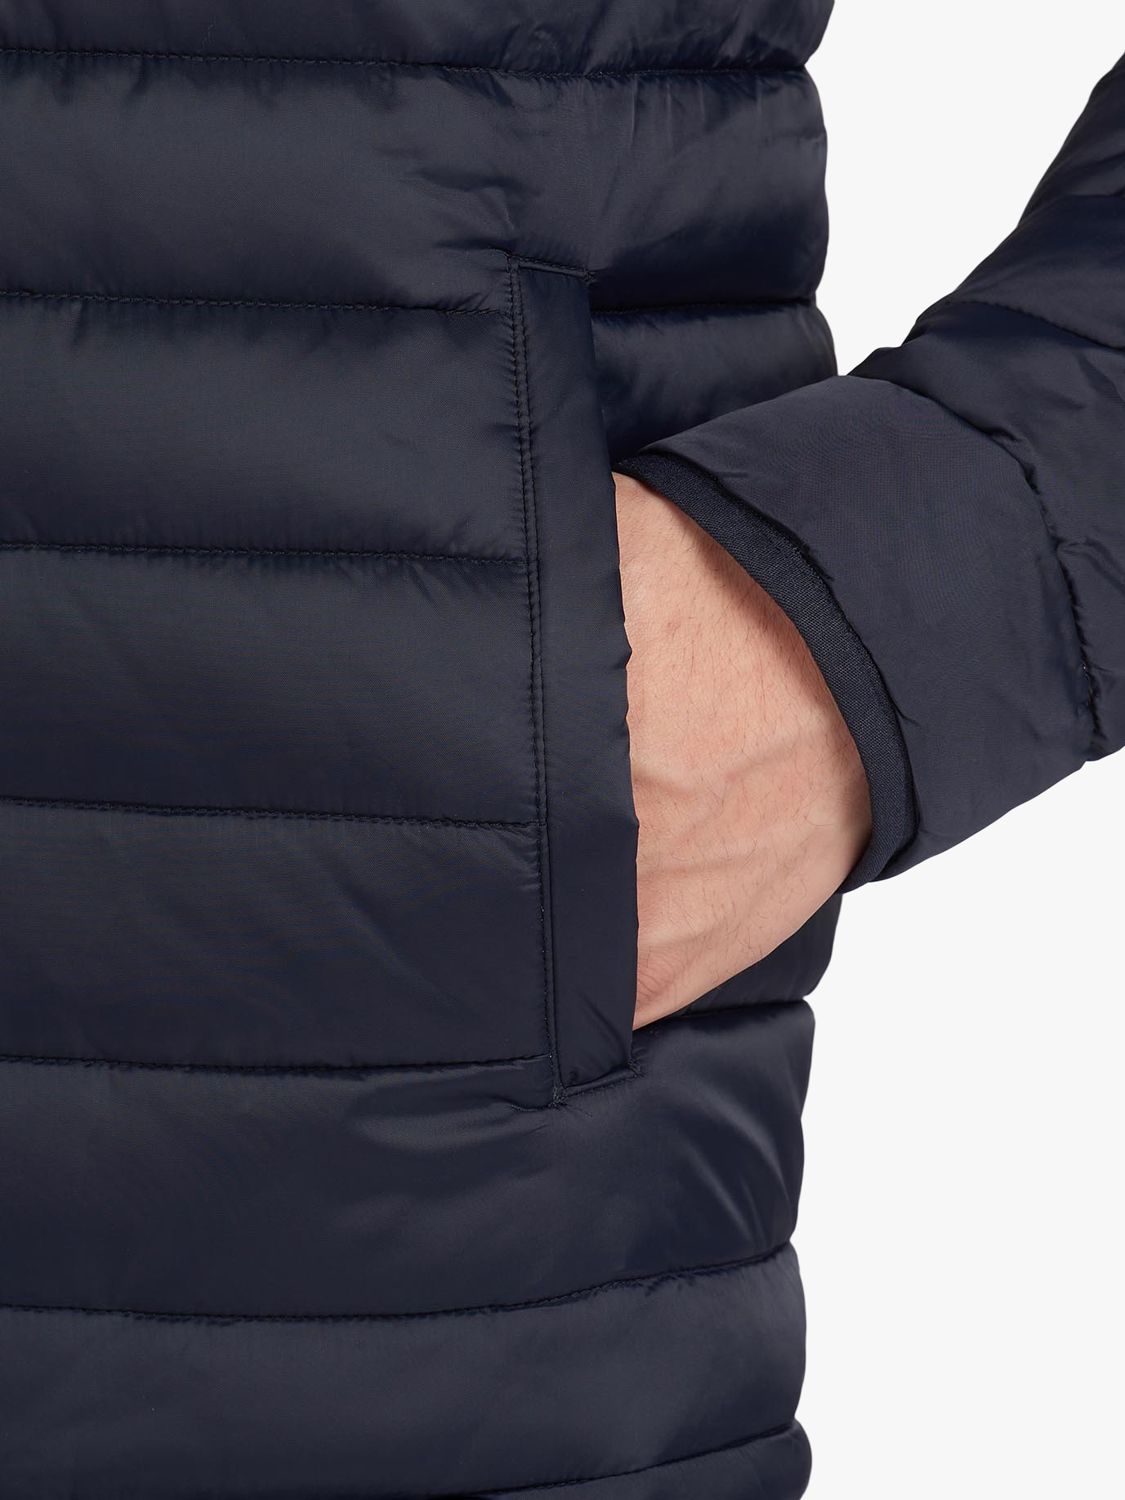 barbour international impeller quilted jacket